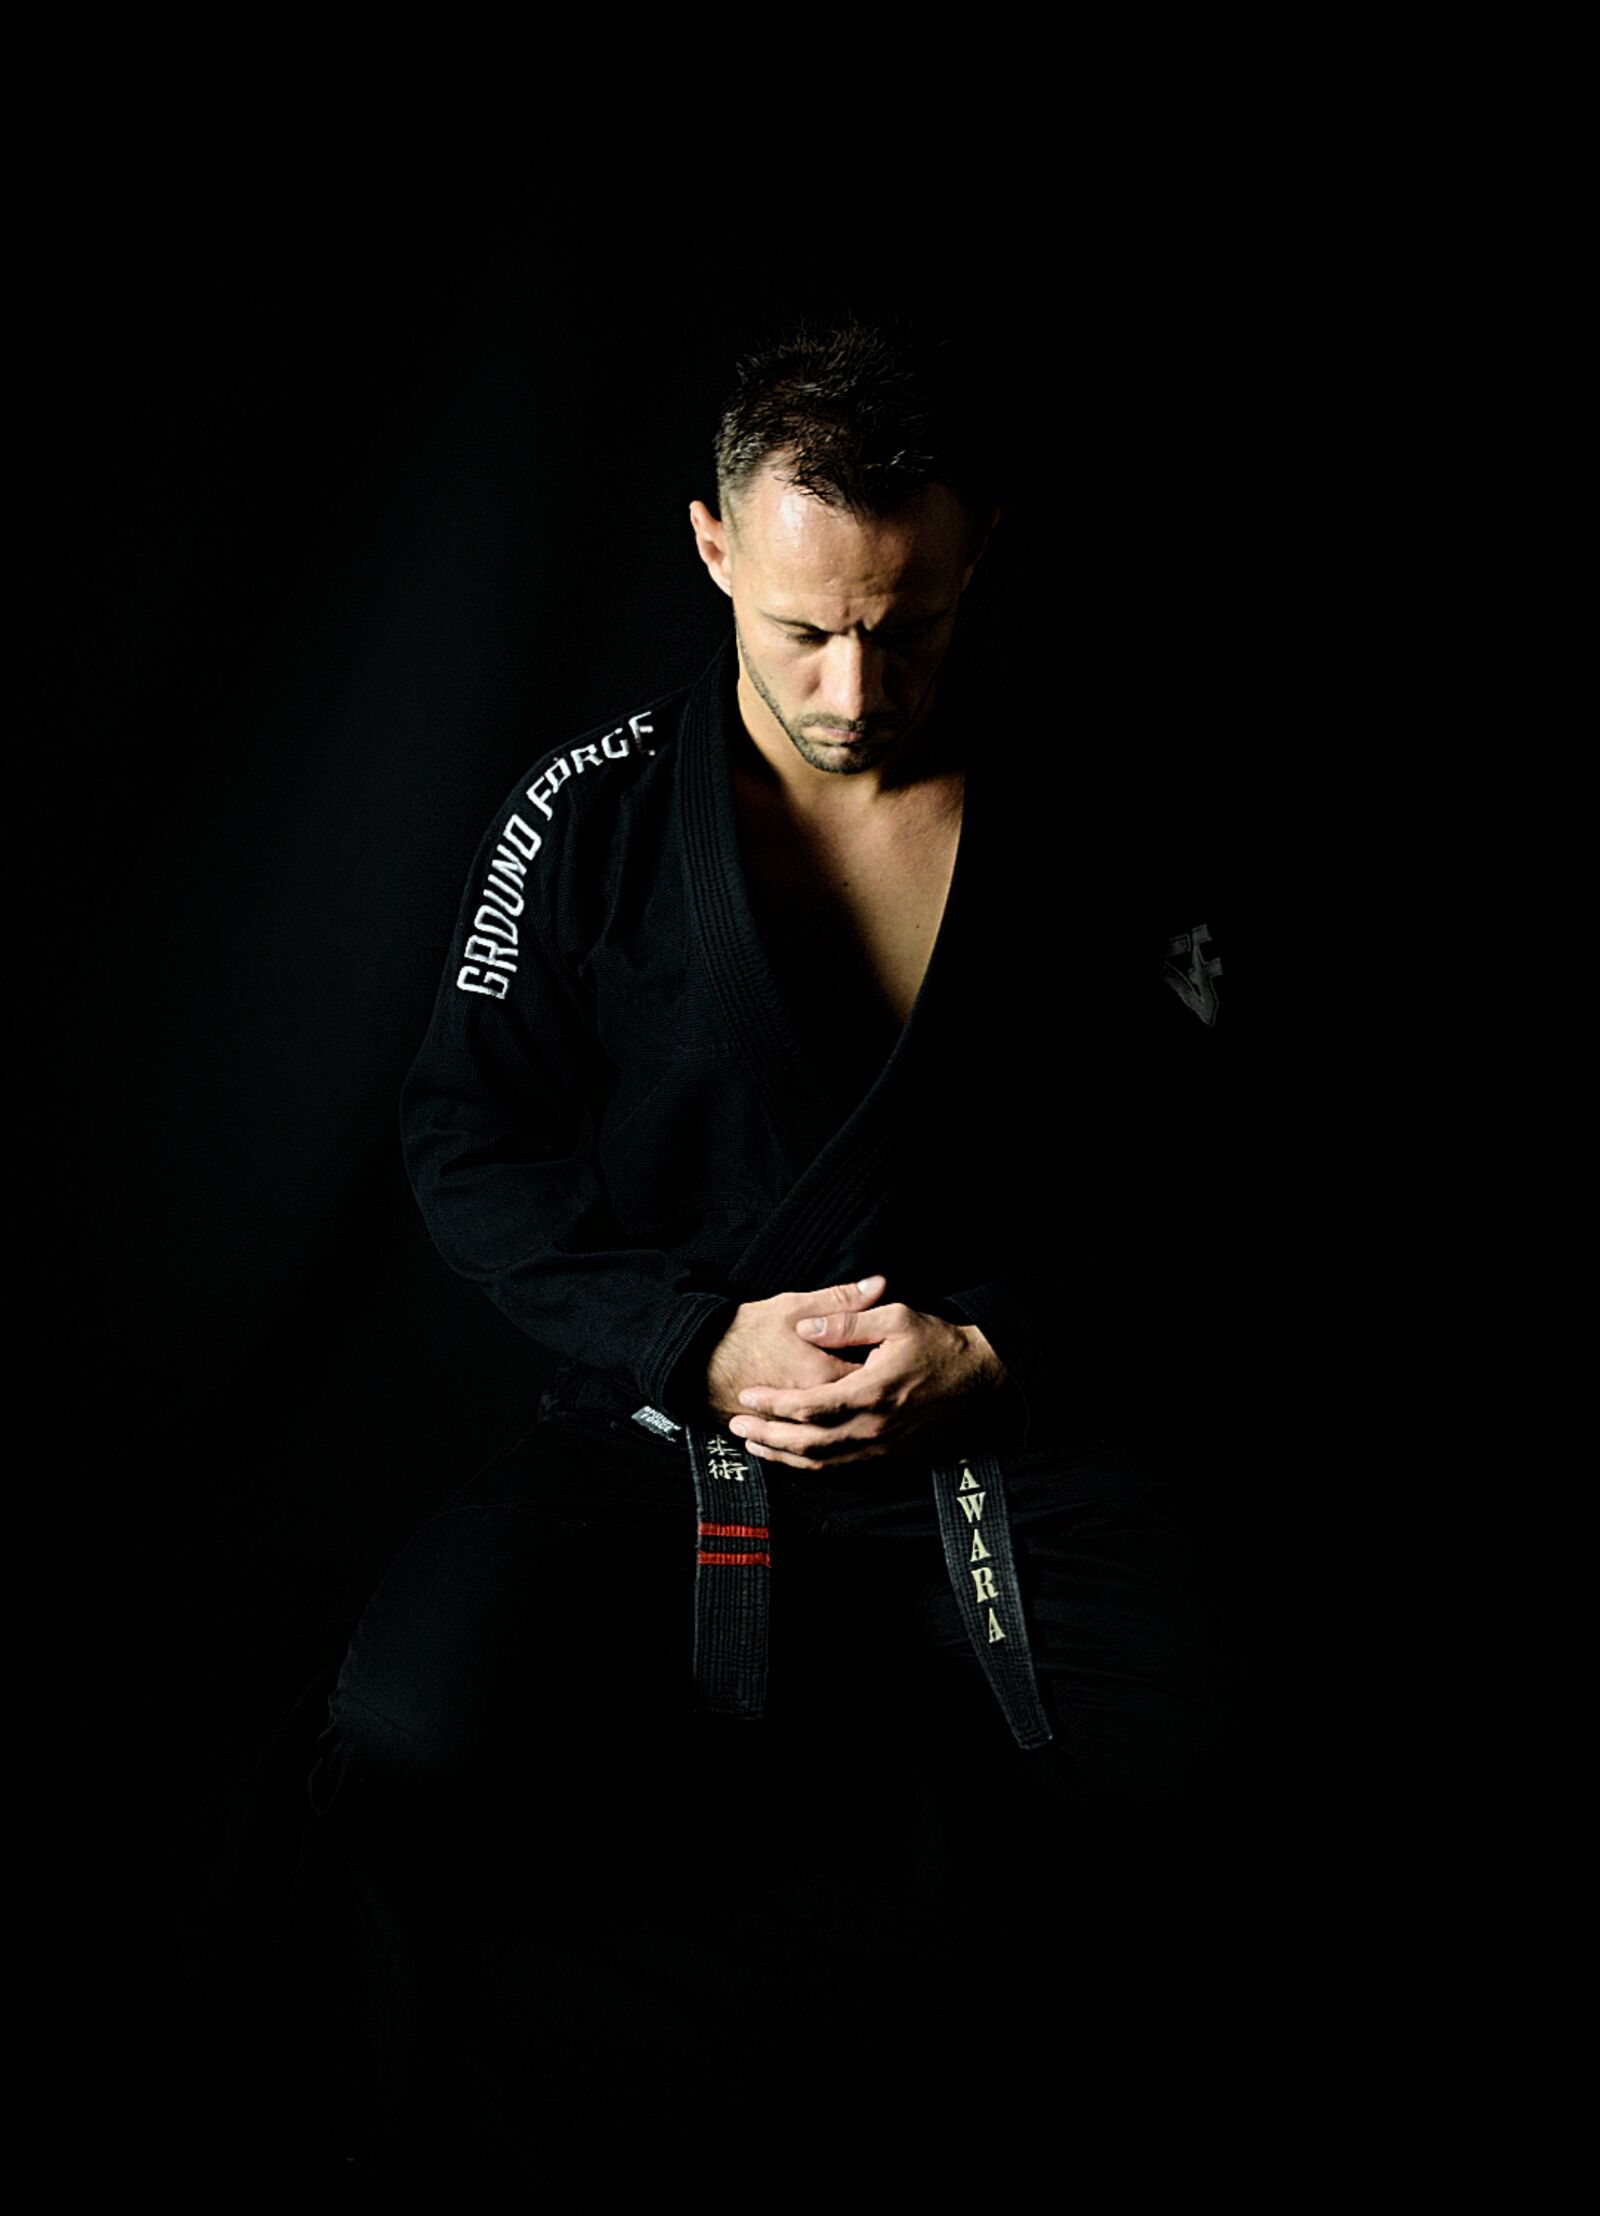 Nikon D5200 sample photo. Warrior, jujitsu, sport photography